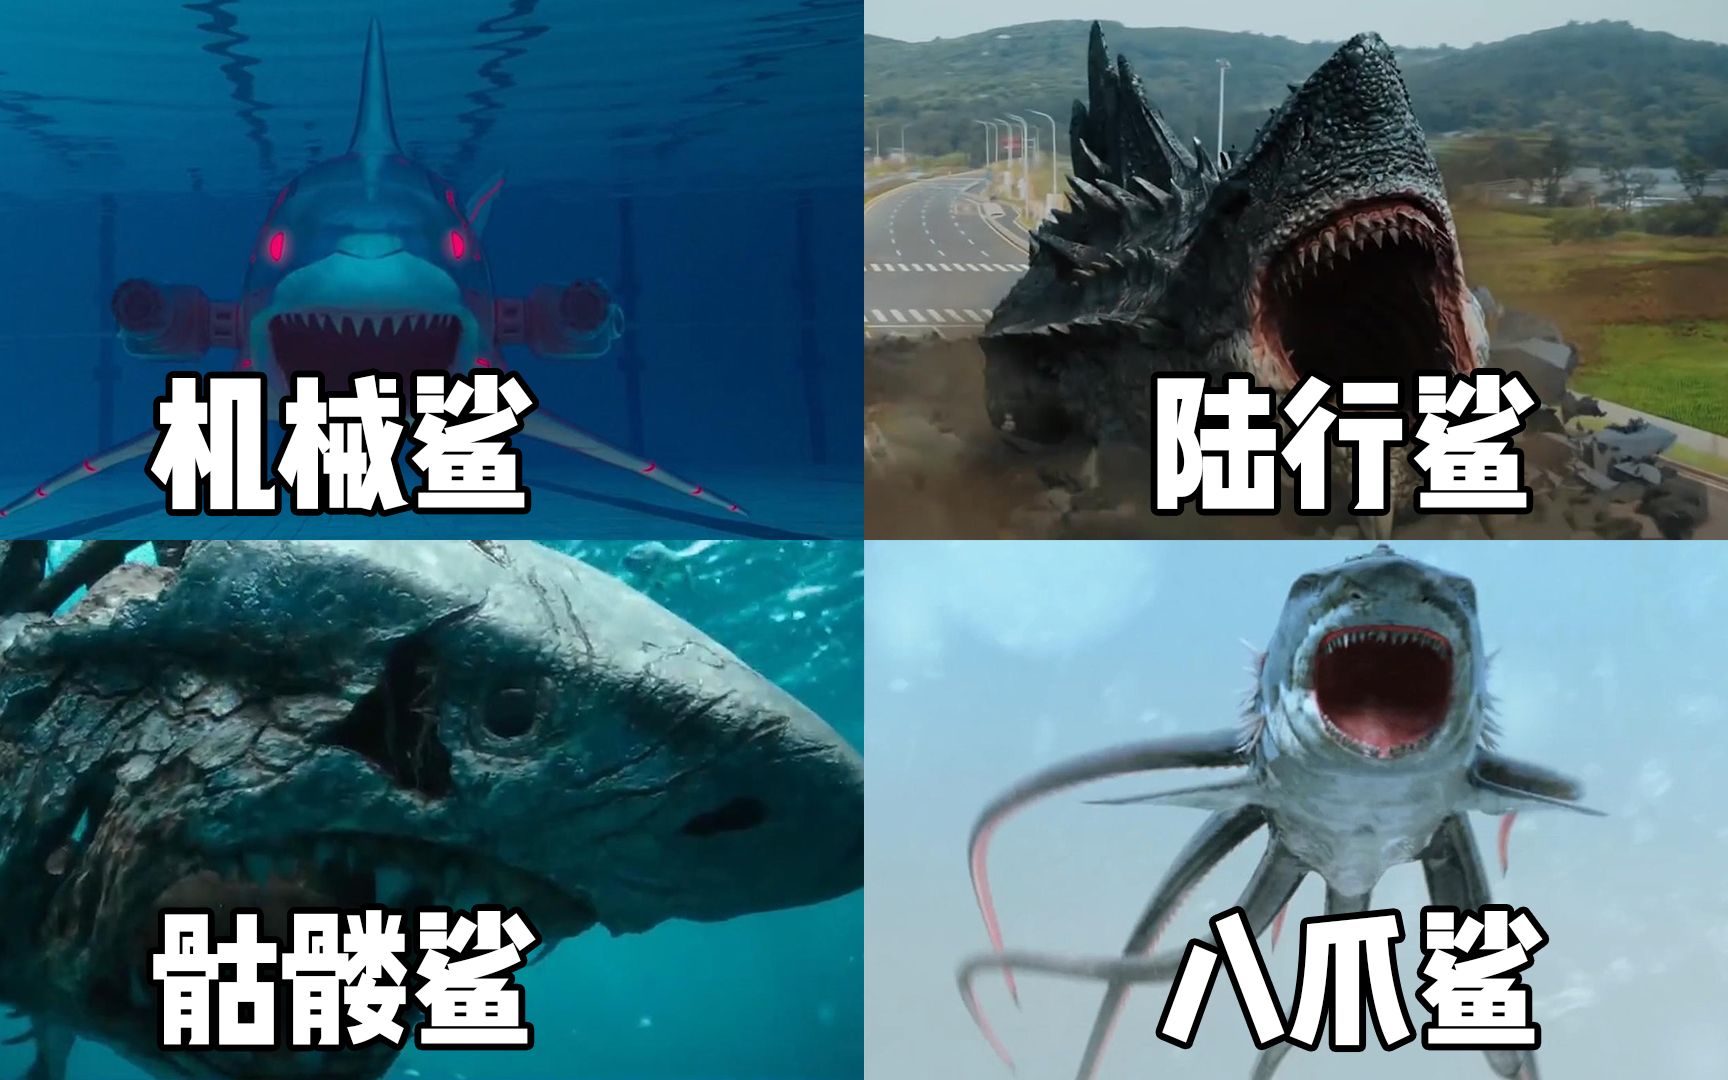 这四只变异的鲨鱼你觉得哪个更厉害陆行上爬的鲨鱼太凶猛了